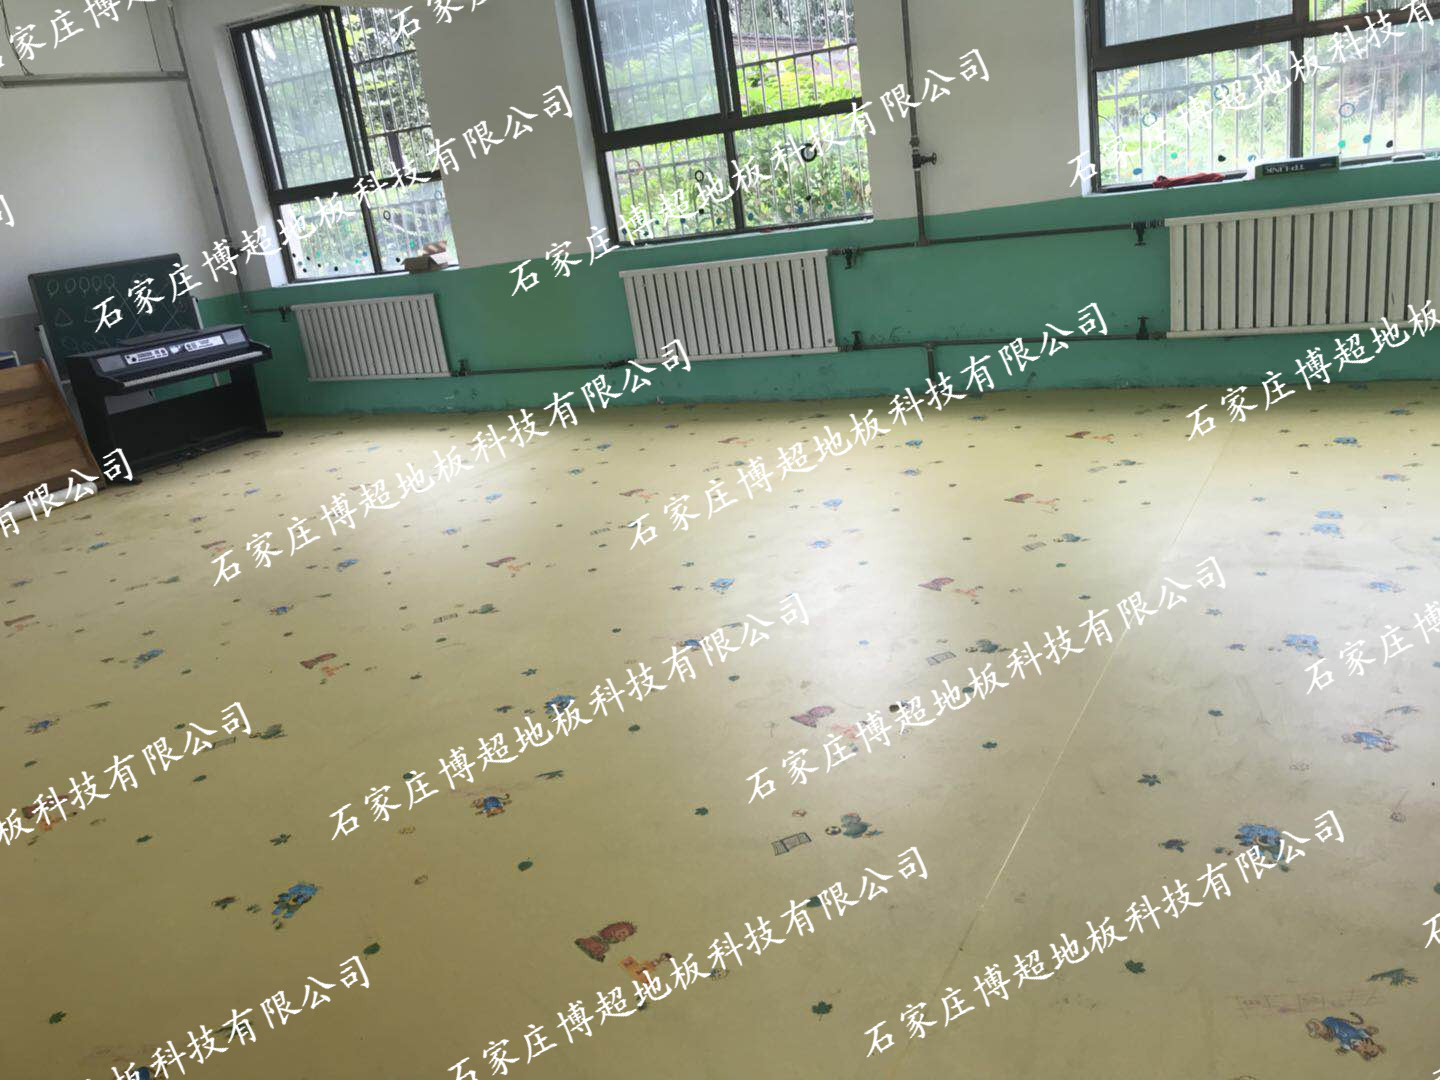 山西省吕梁市某幼儿园塑胶地板